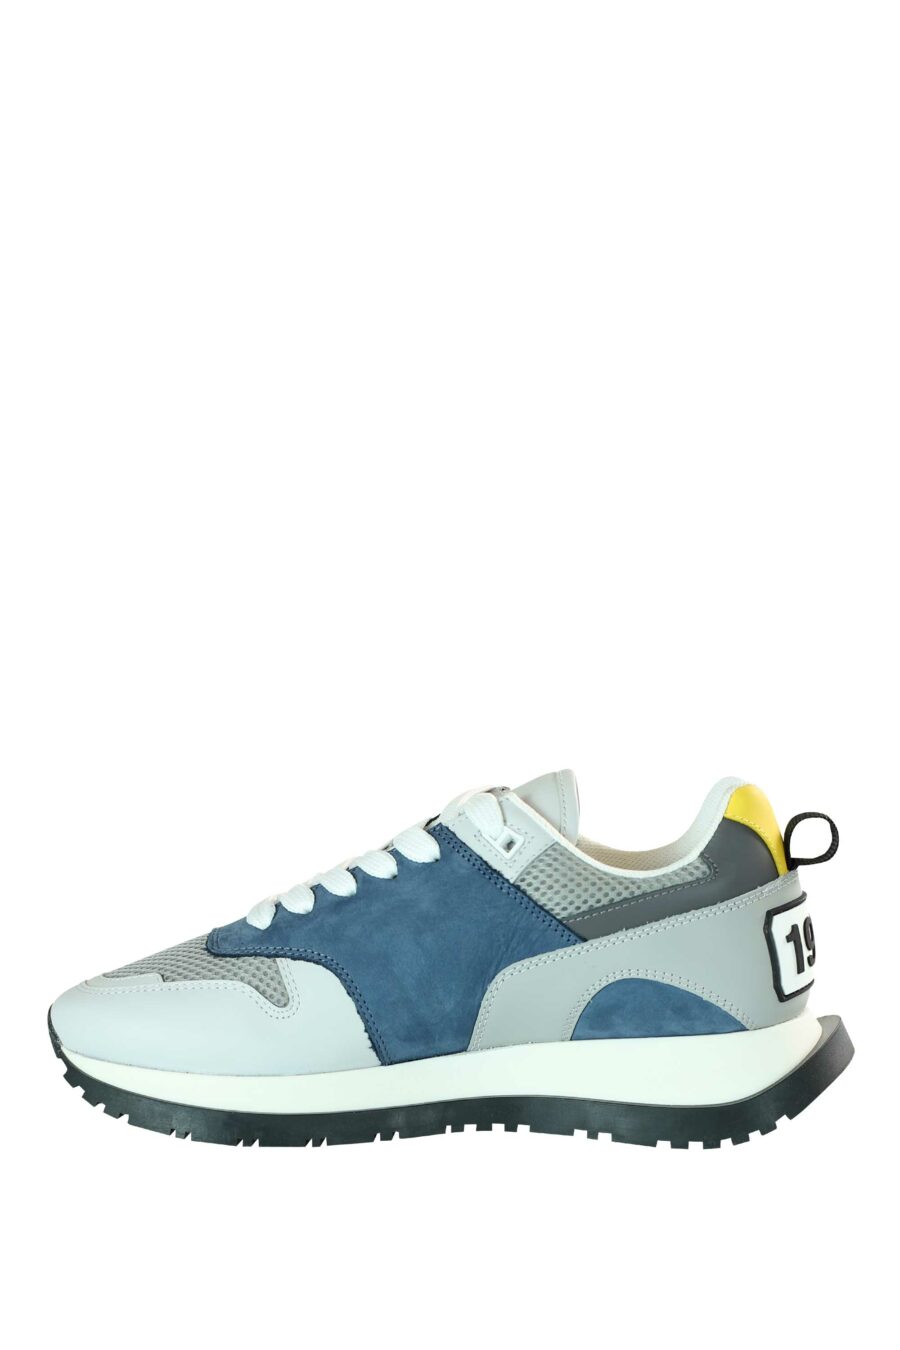 Chaussures de course multicolores bleues avec logo sur la semelle - 8055777205549 3